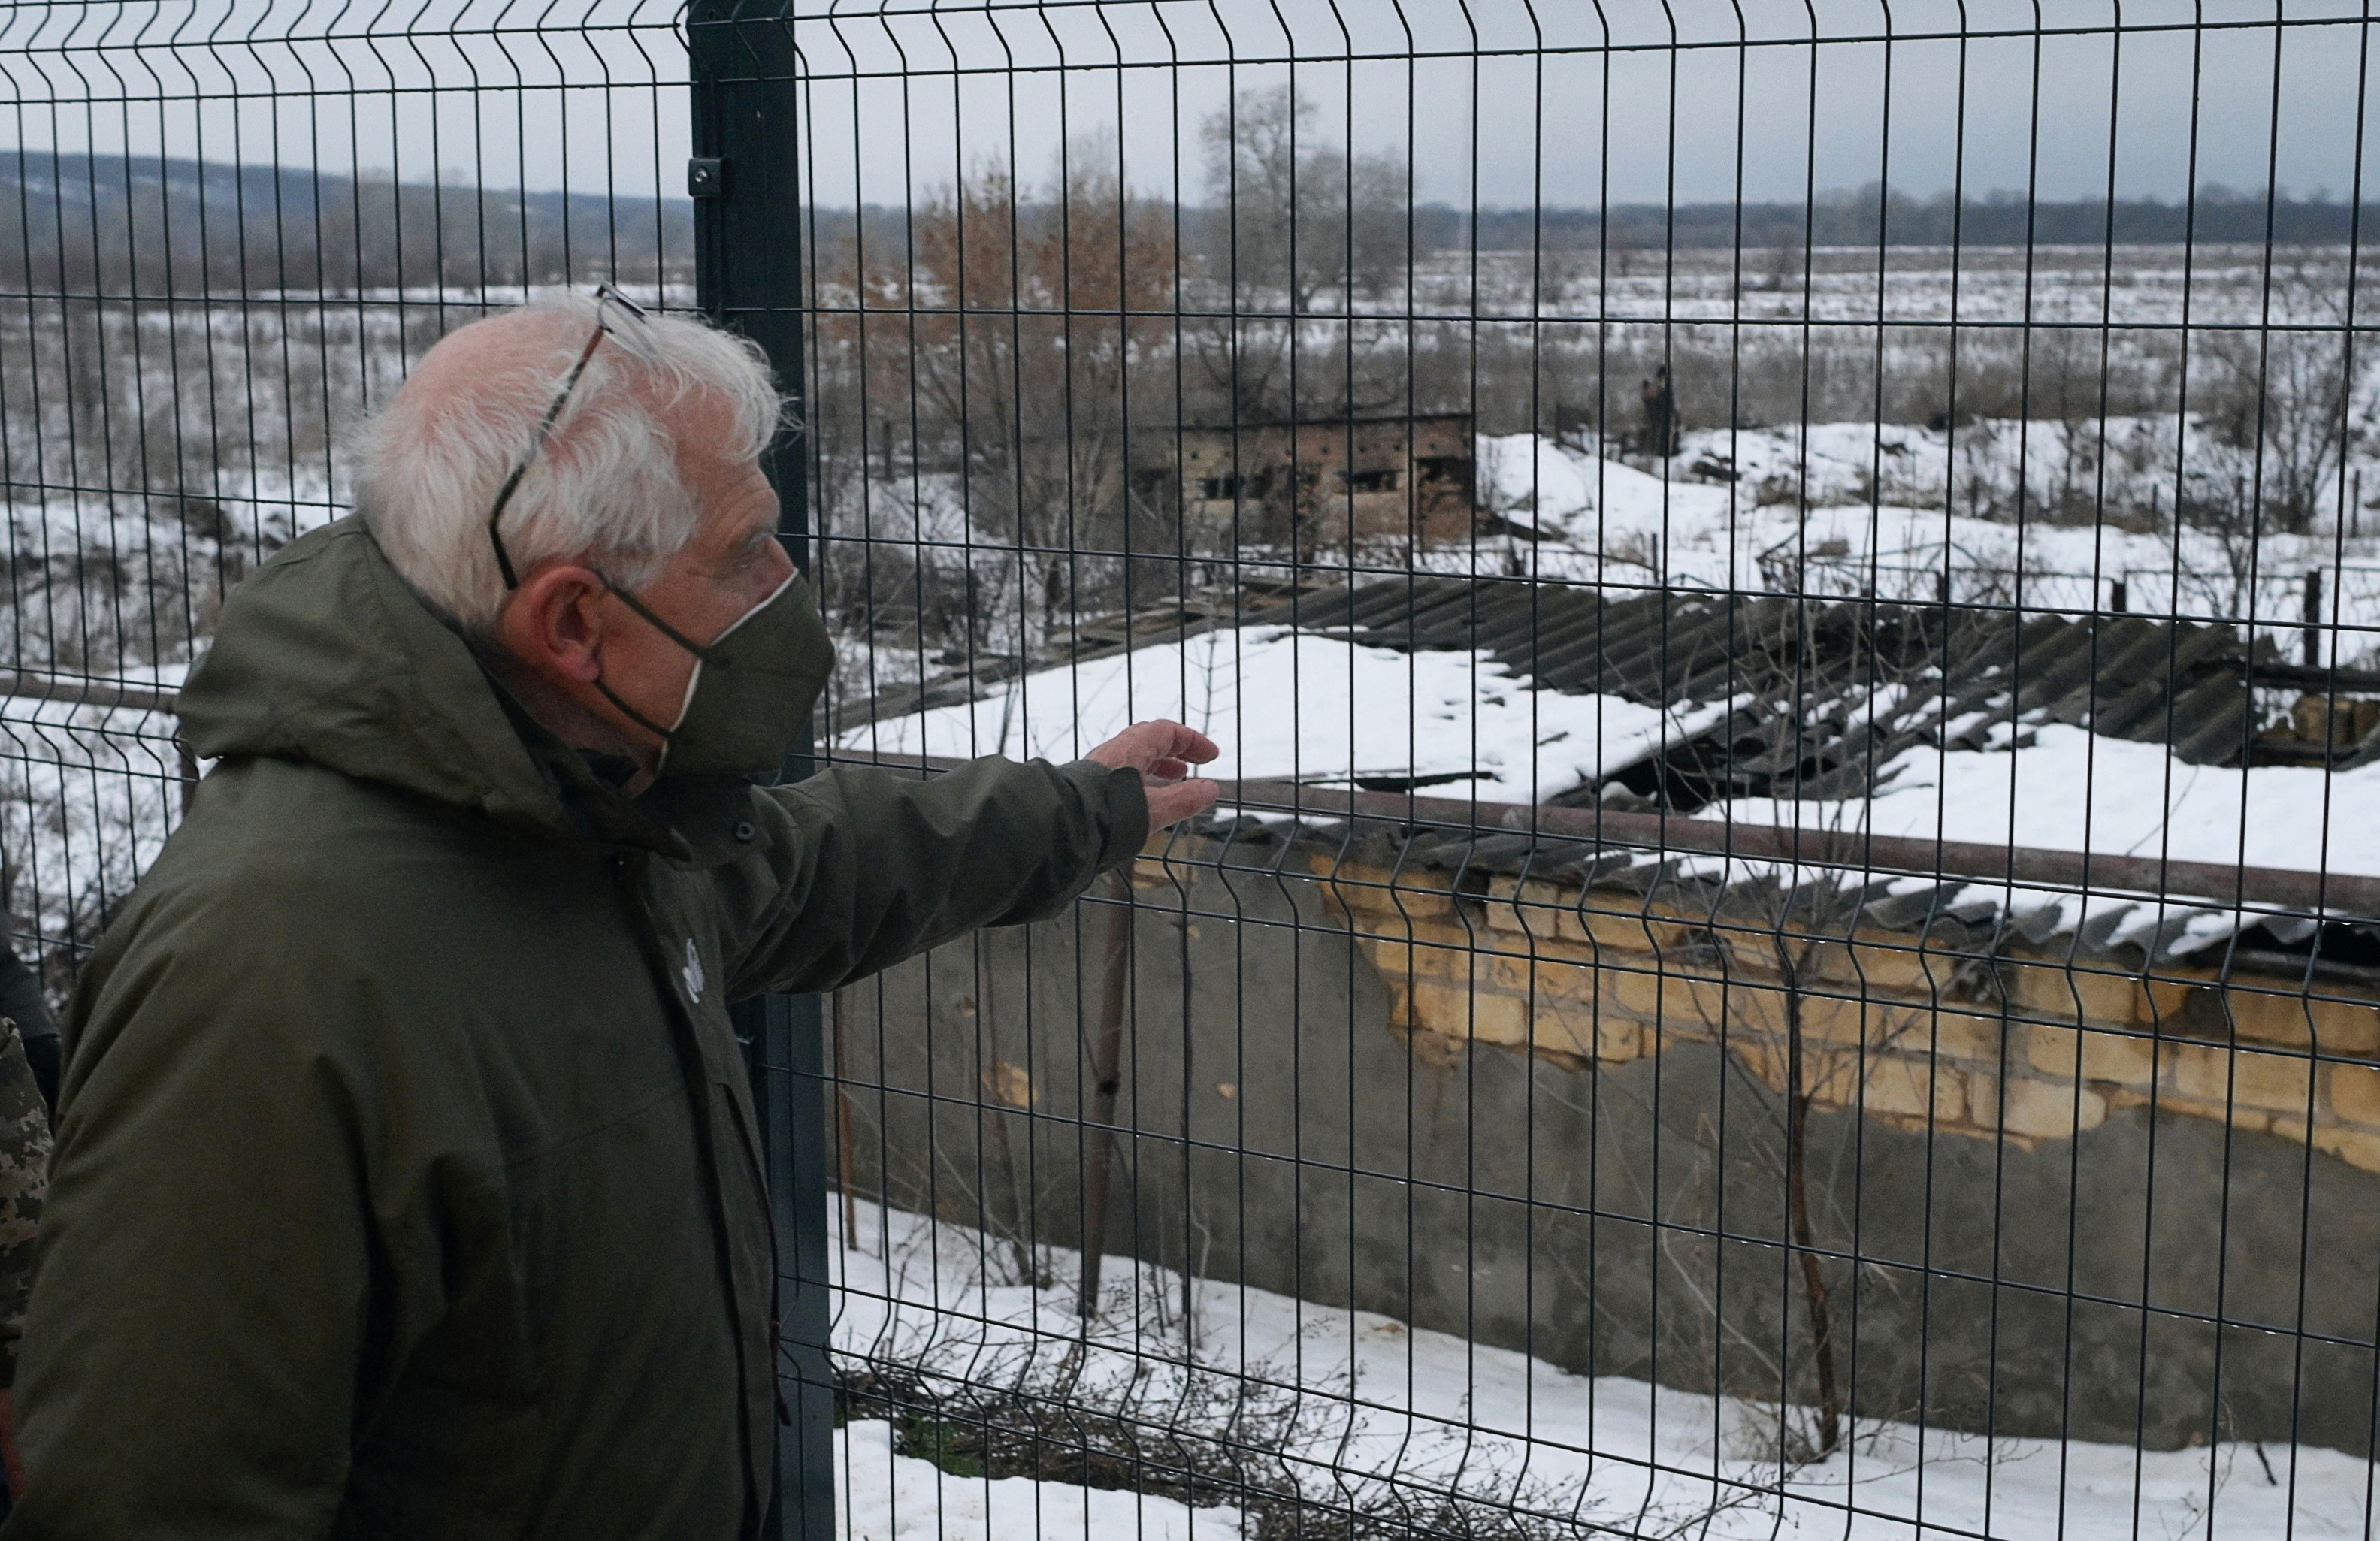 Le haut représentant de l'Union européenne pour les affaires étrangères, Josep Borrell, visite un poste de contrôle dans la colonie de Stanytsia Luhanska dans la région de Luhansk, en Ukraine, le 5 janvier 2022. REUTERS/Maksim Levin